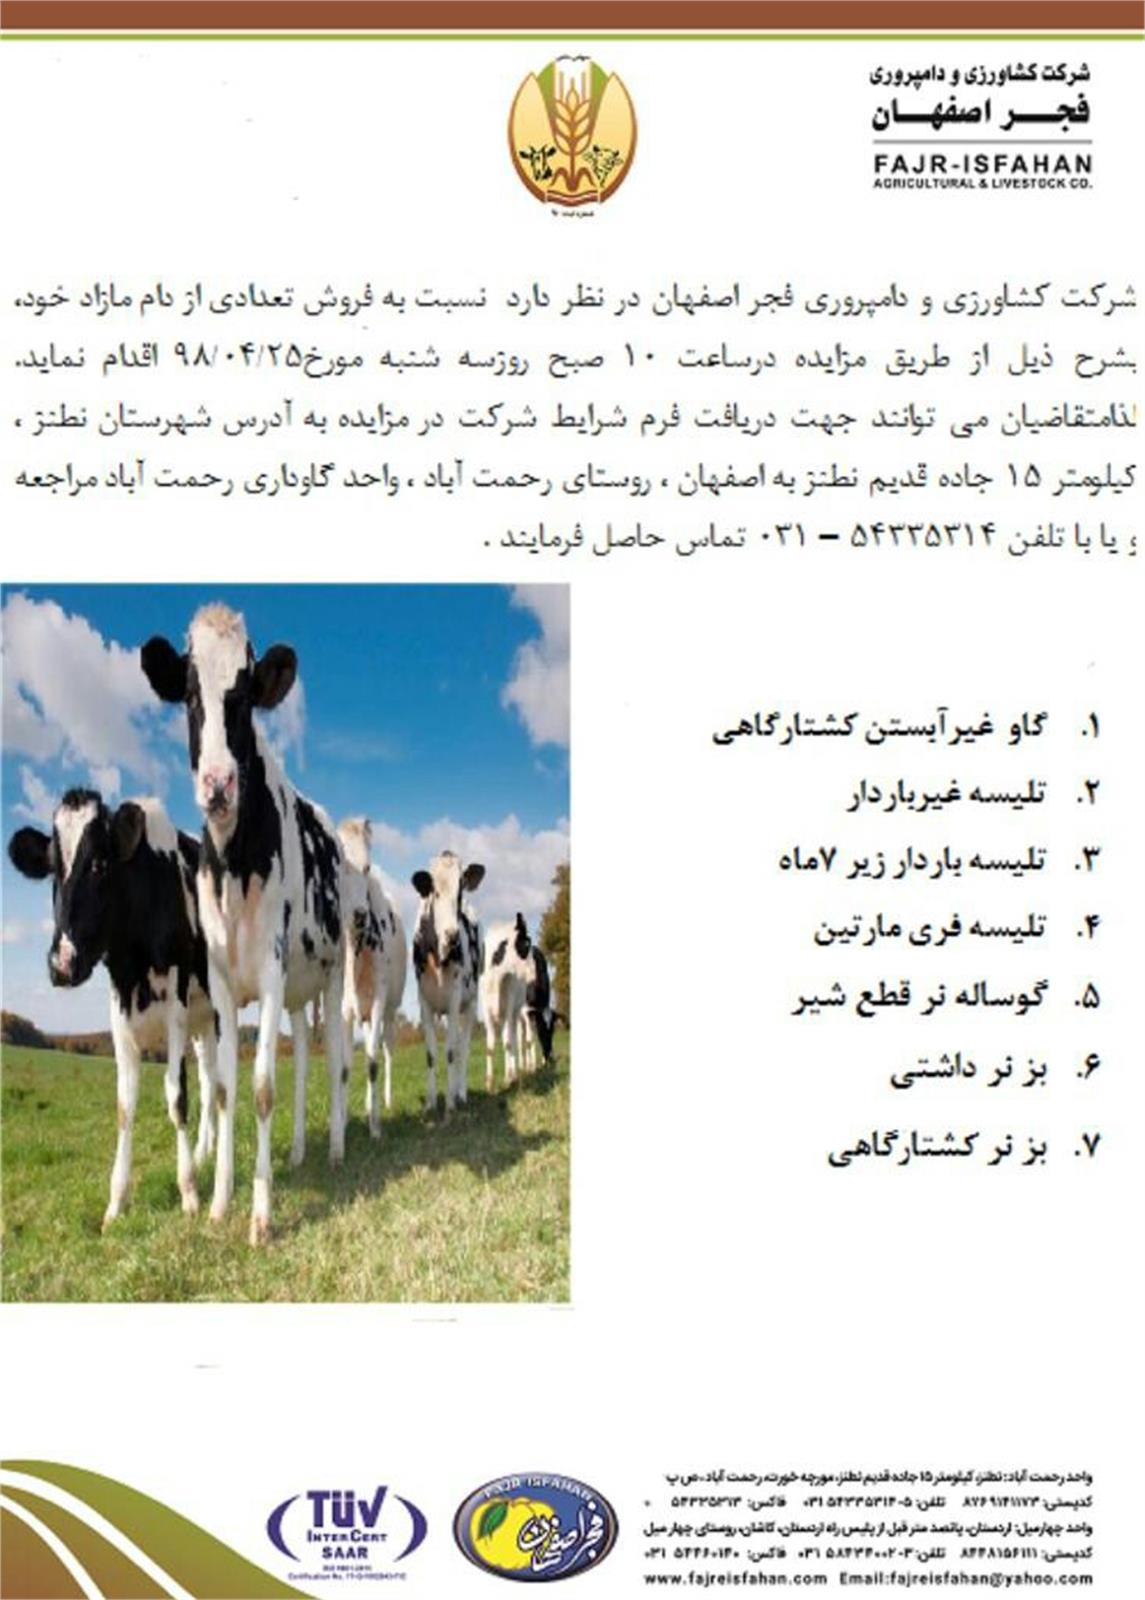 آگهی مزایده شرکت کشاورزی و دامپروری فجر اصفهان